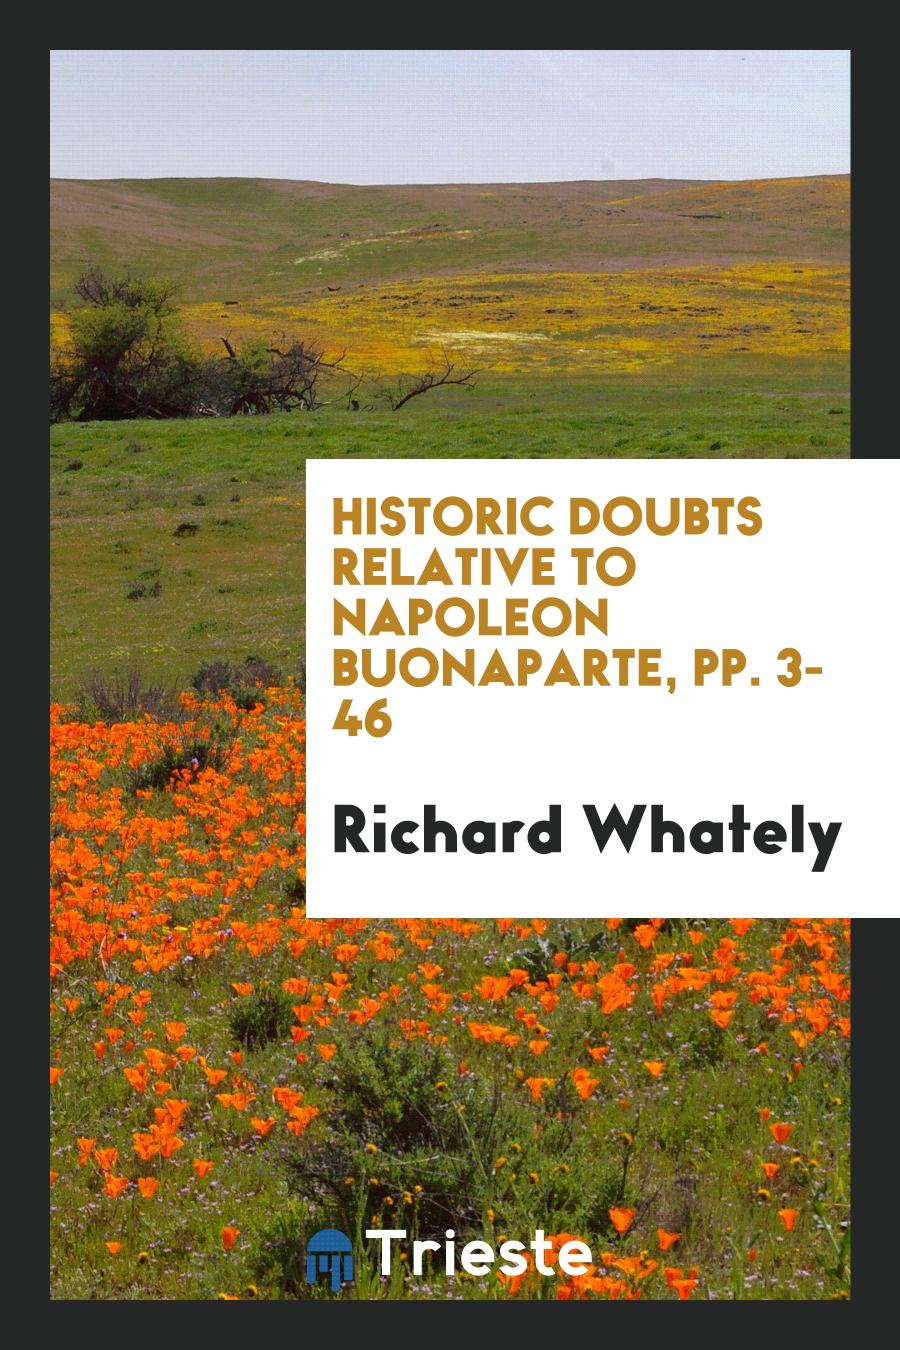 Historic Doubts Relative to Napoleon Buonaparte, pp. 3-46